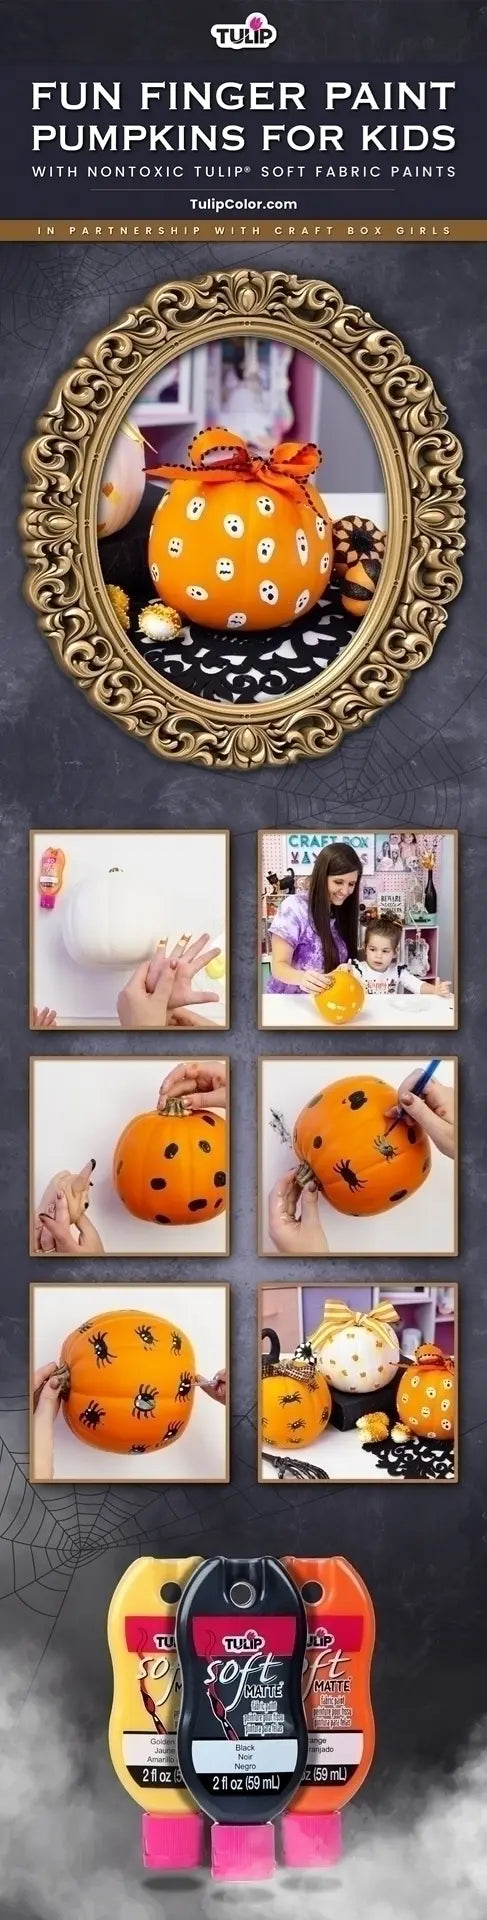 Finger Paint Designs for Pumpkins